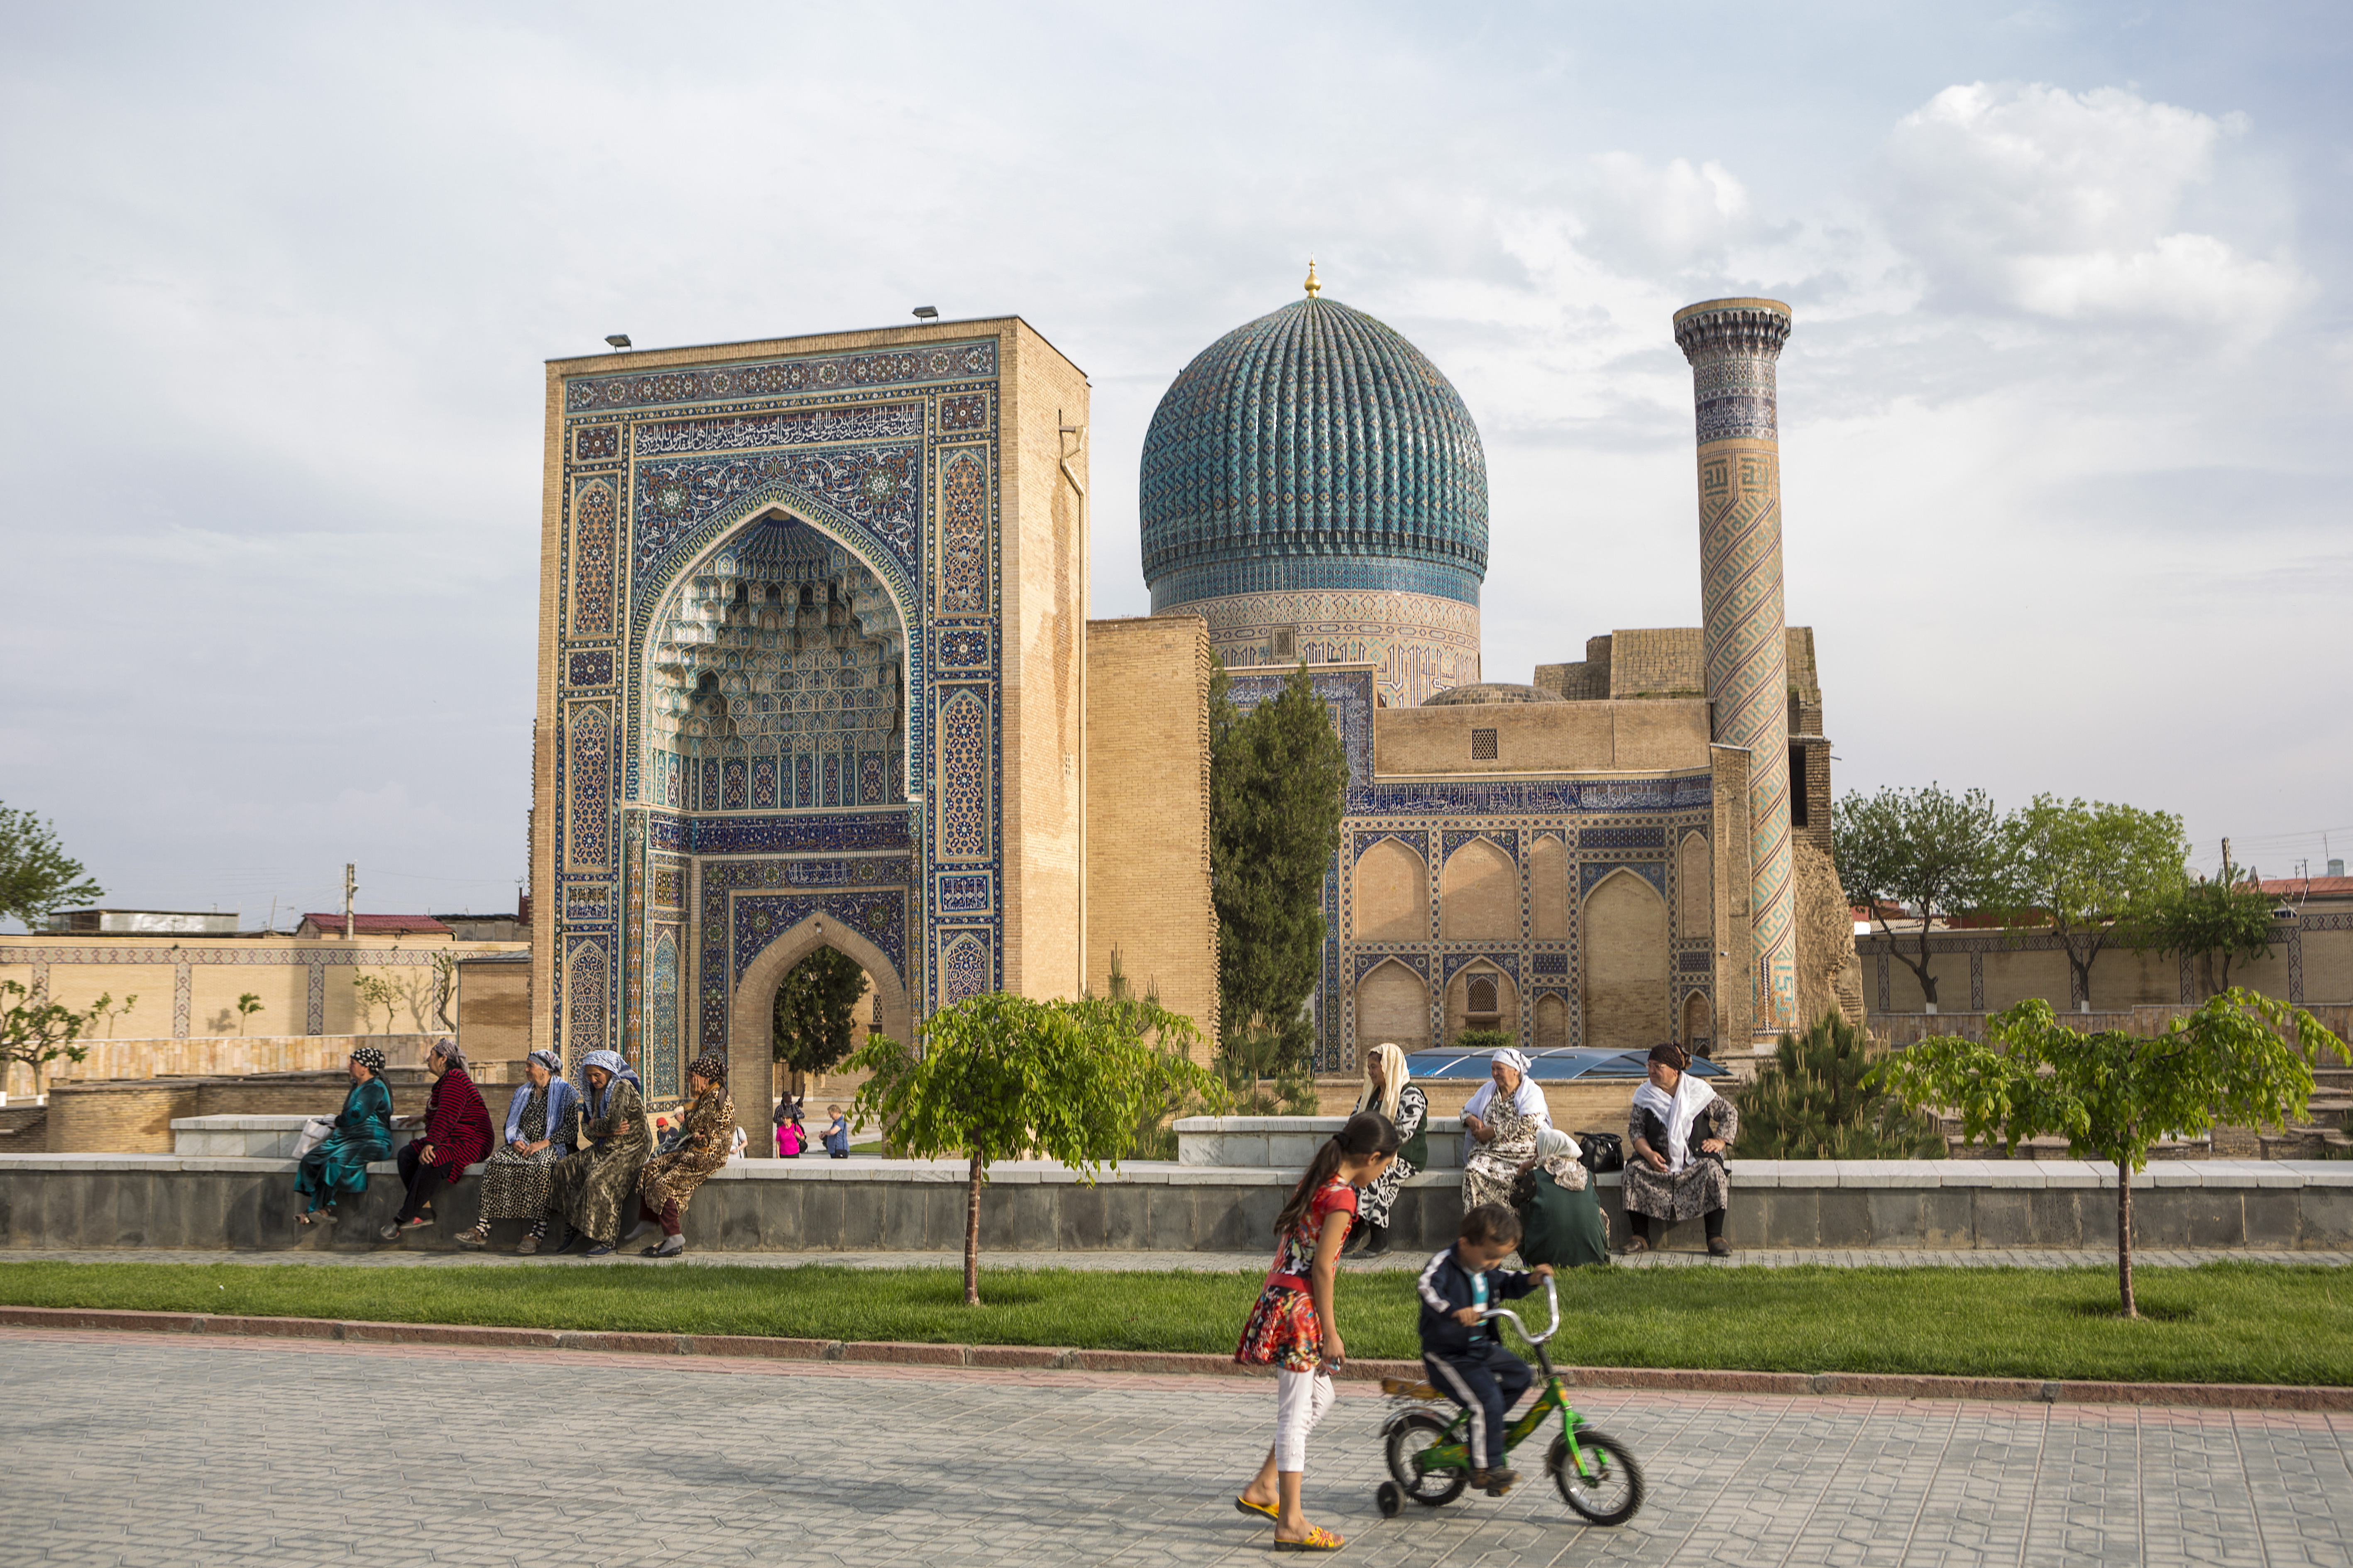 Uzbekistan, Samarkand, Amir Timur Mausoleum